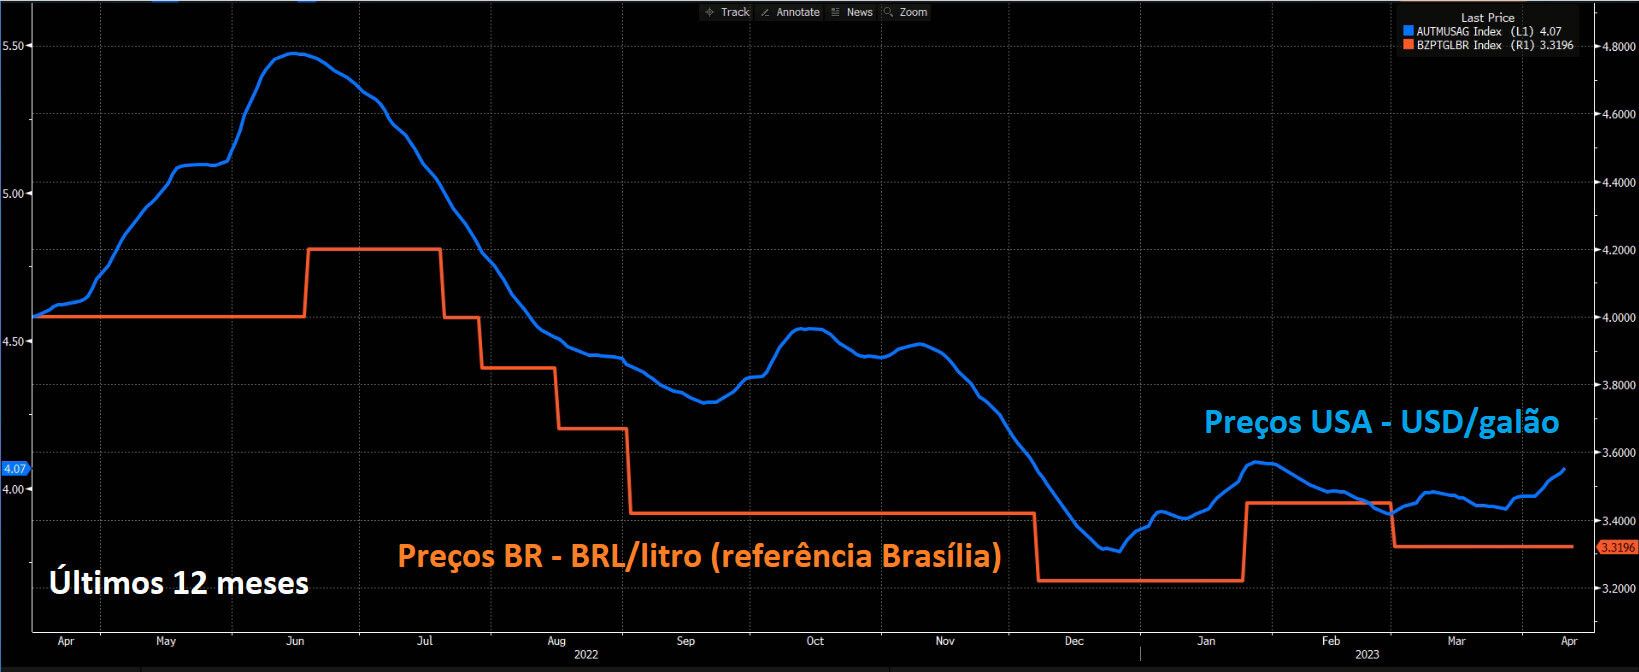 Gráfico mostra preços referenciais do petróleo no Brasil comparado aos preços internacionais do Brent nos últimos 12 meses